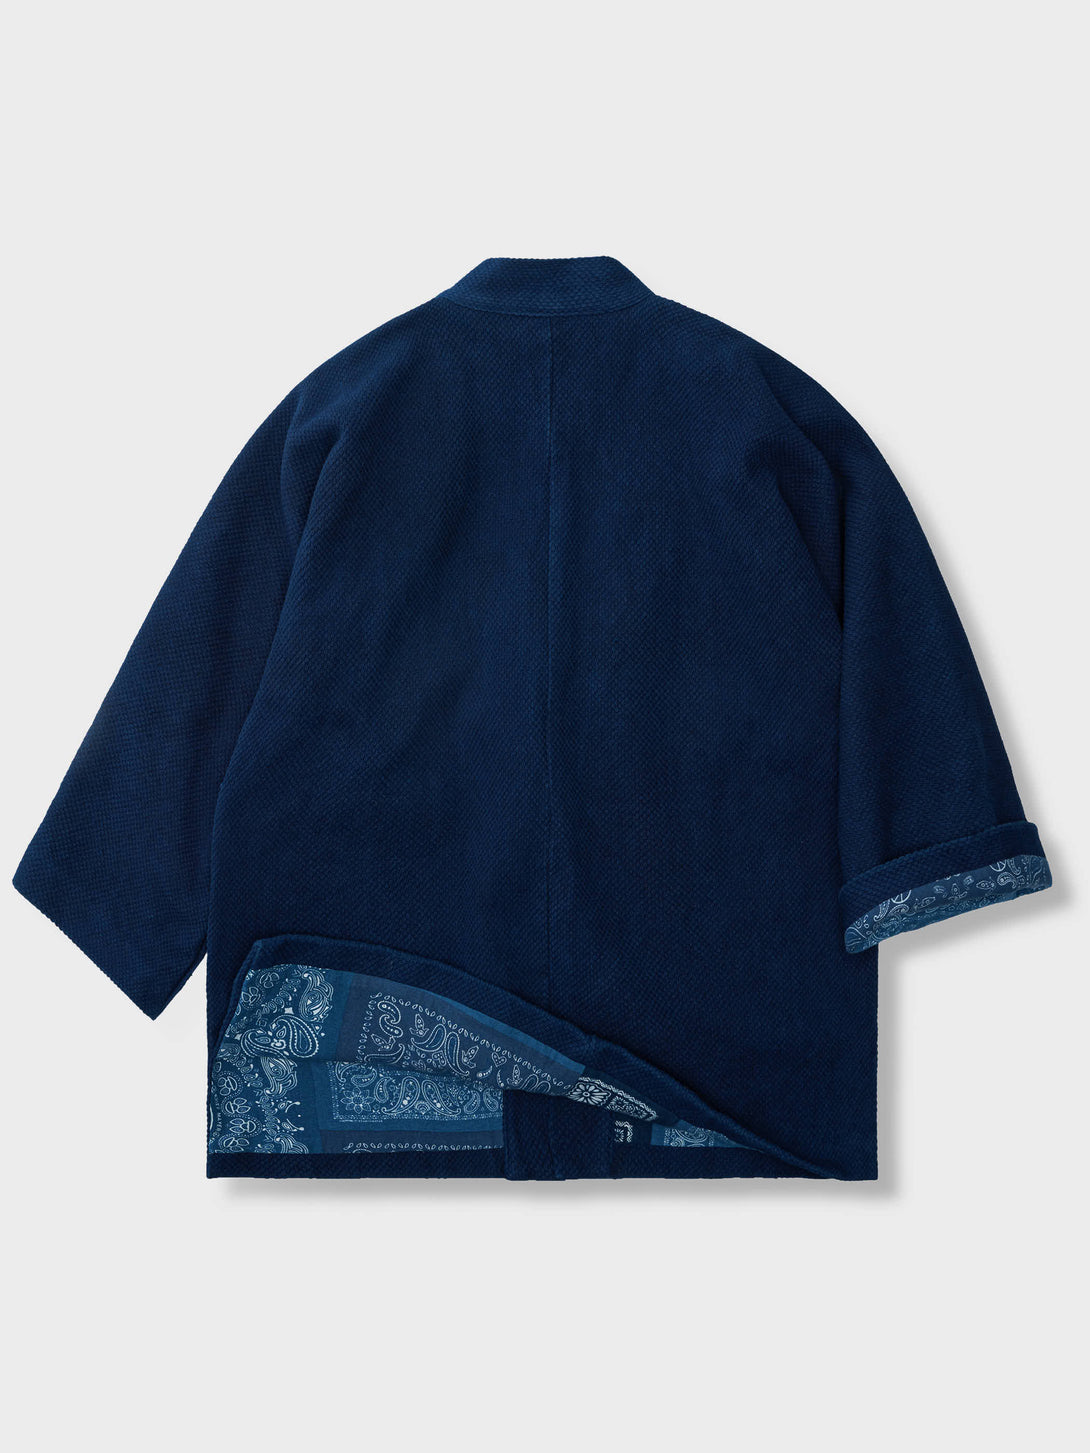 和の雰囲気を詰め込んだスペシャル藍染半纏、裏返すとバンダナ柄が特徴的な西海岸風のデザイン